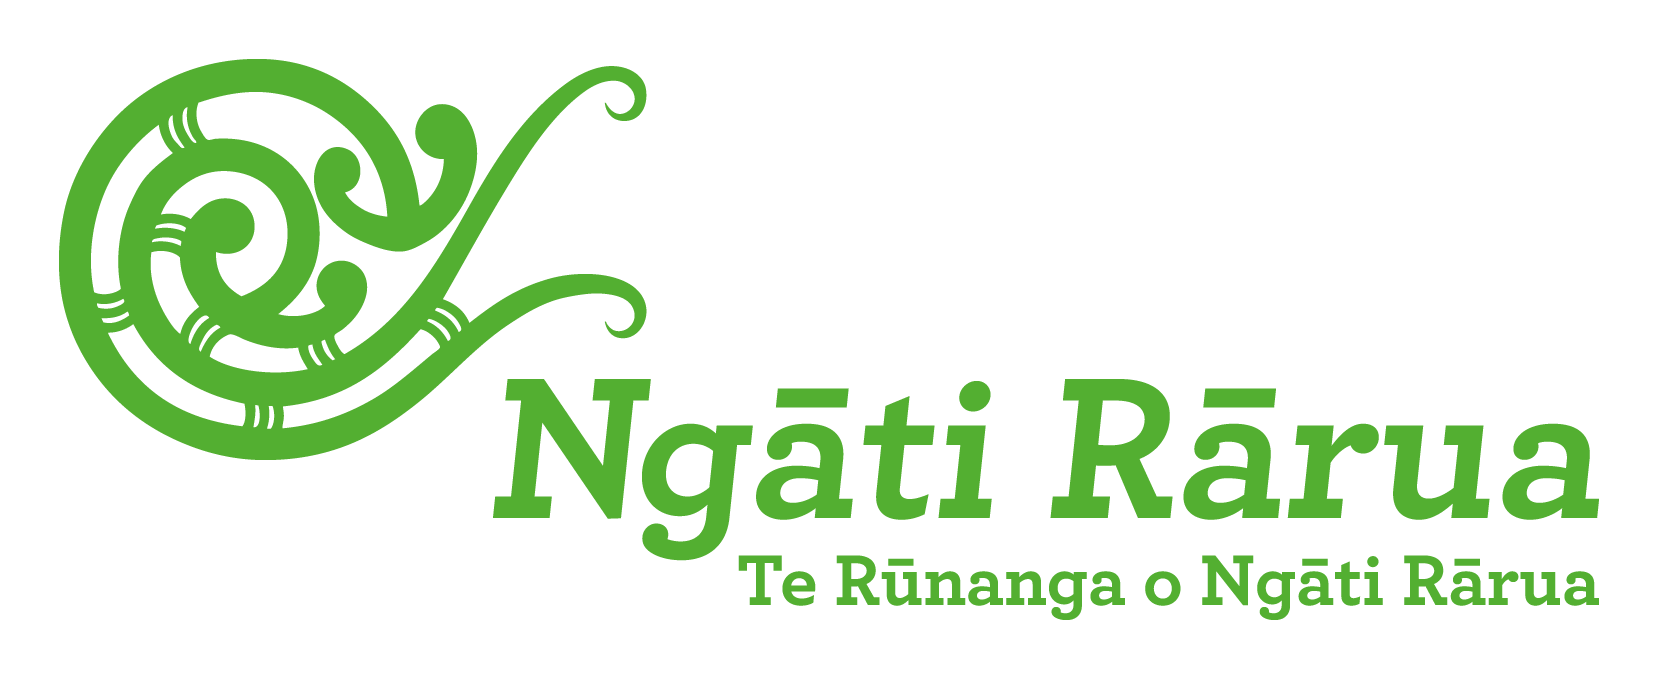 Te Rūnanga o Ngāti Rārua